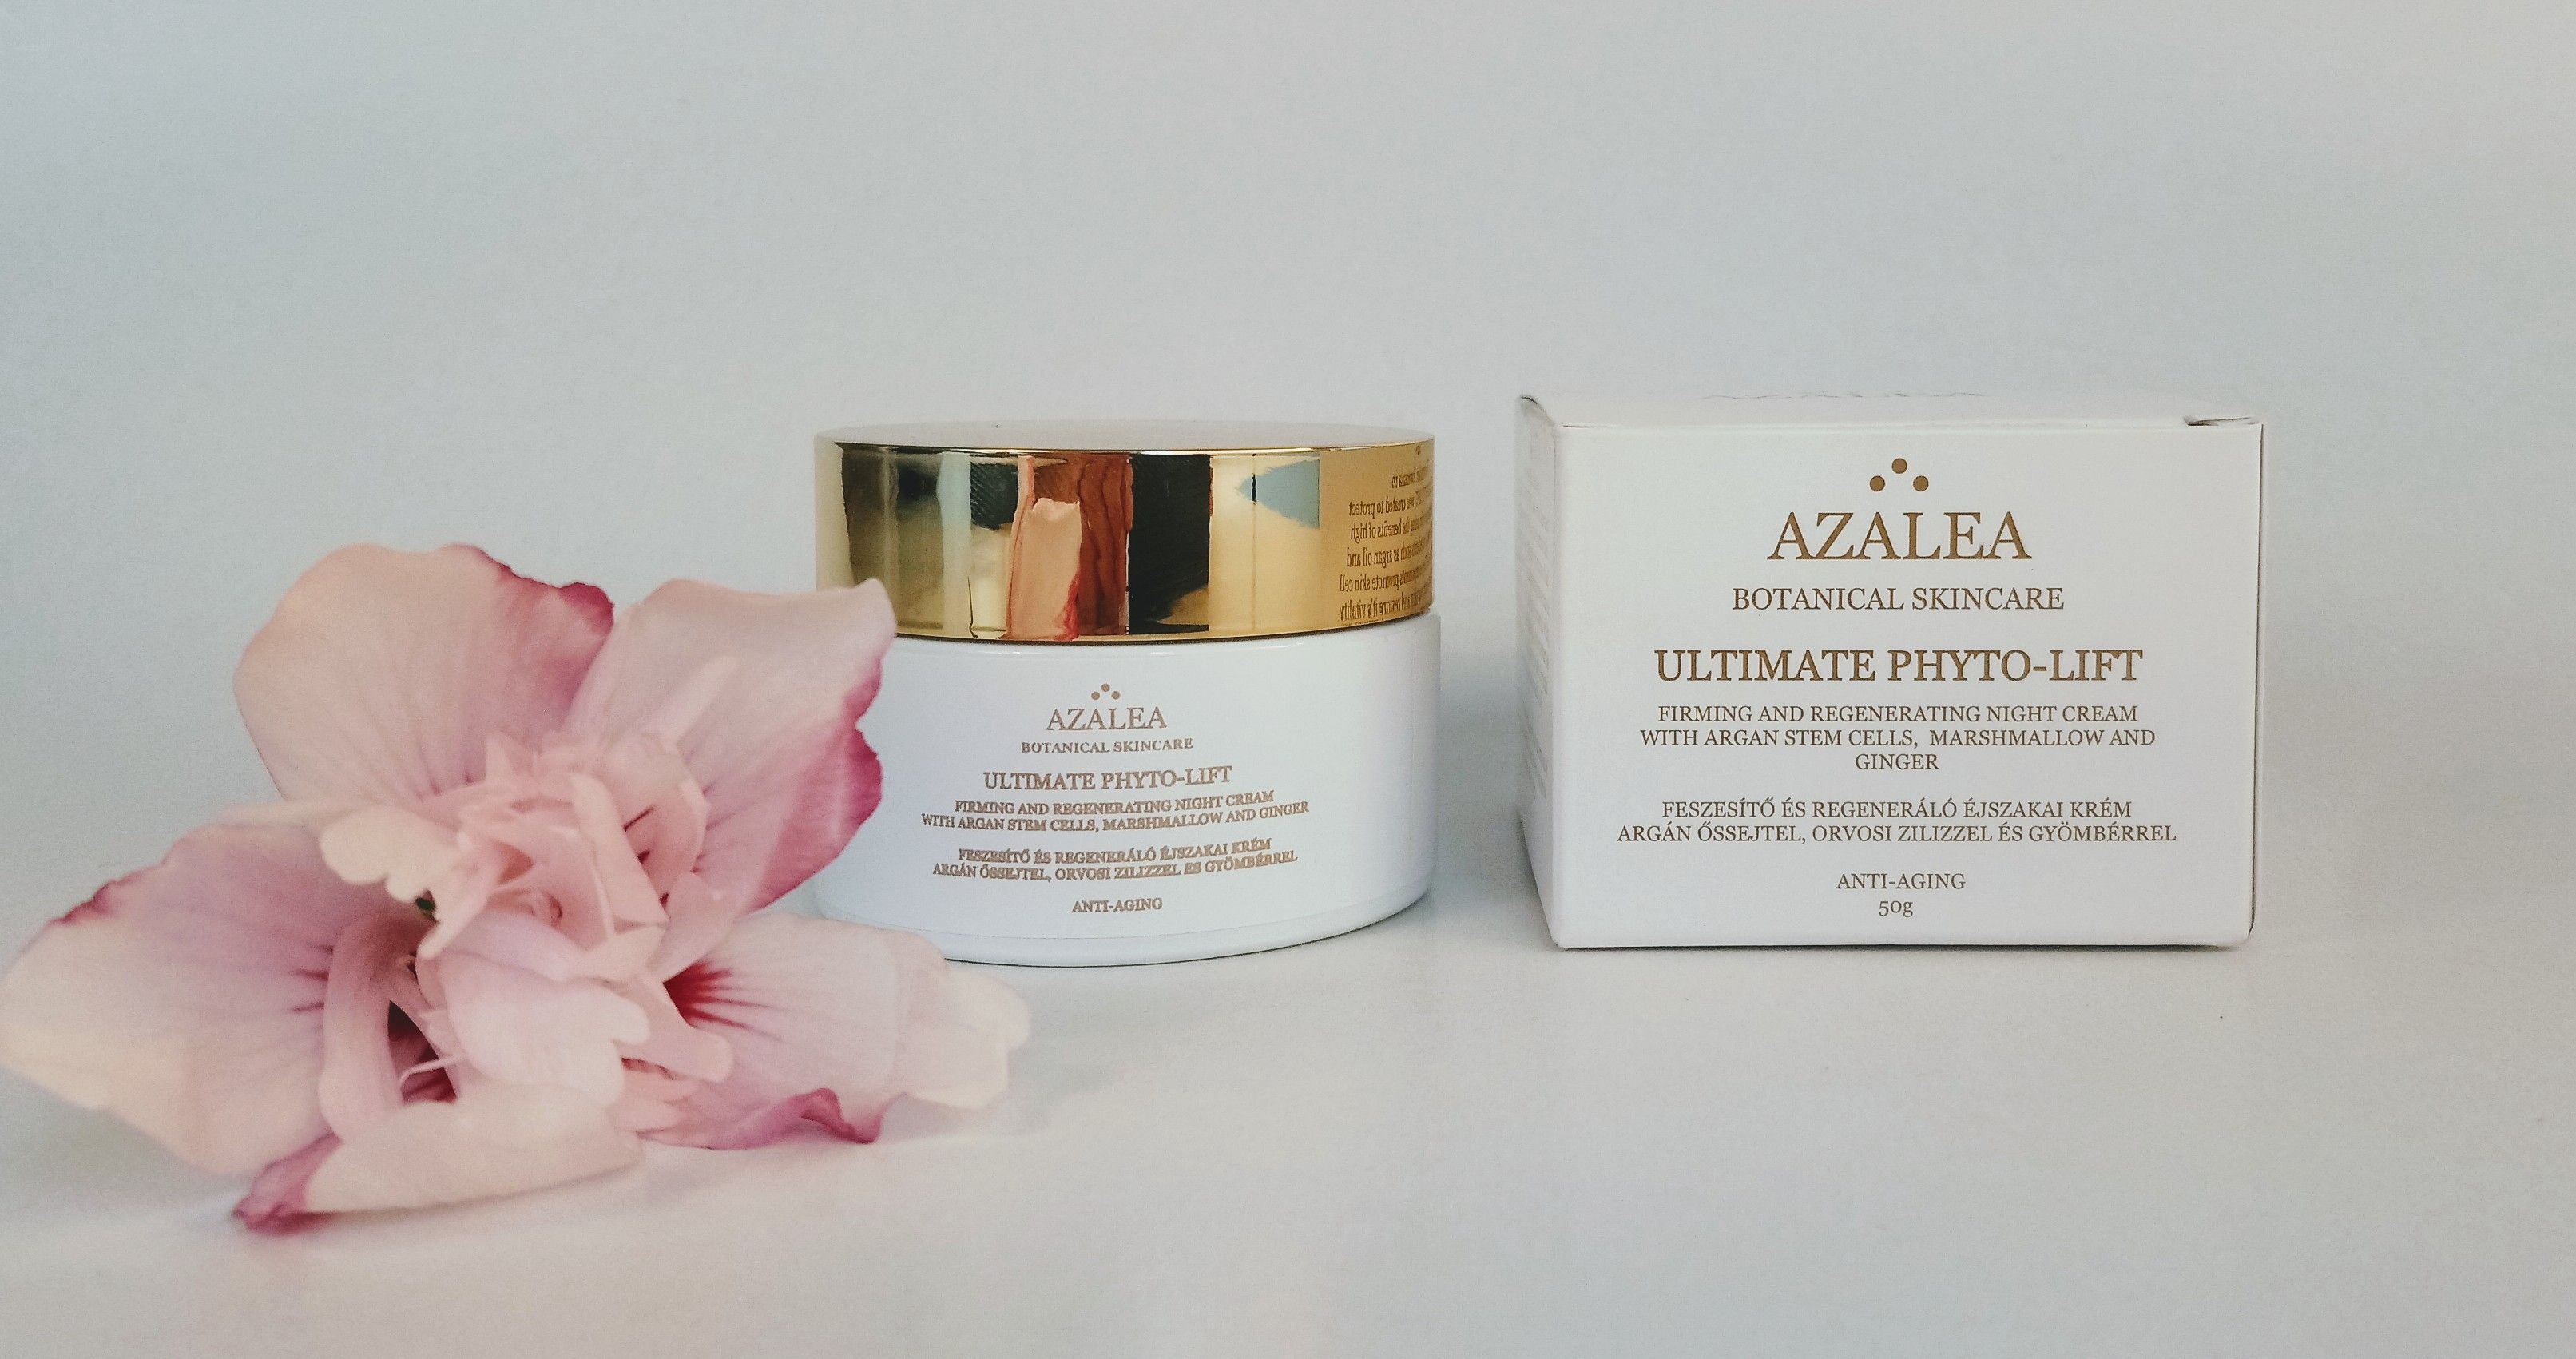 AZALEA Botanical Skincare Ultimate Phyto-Lift